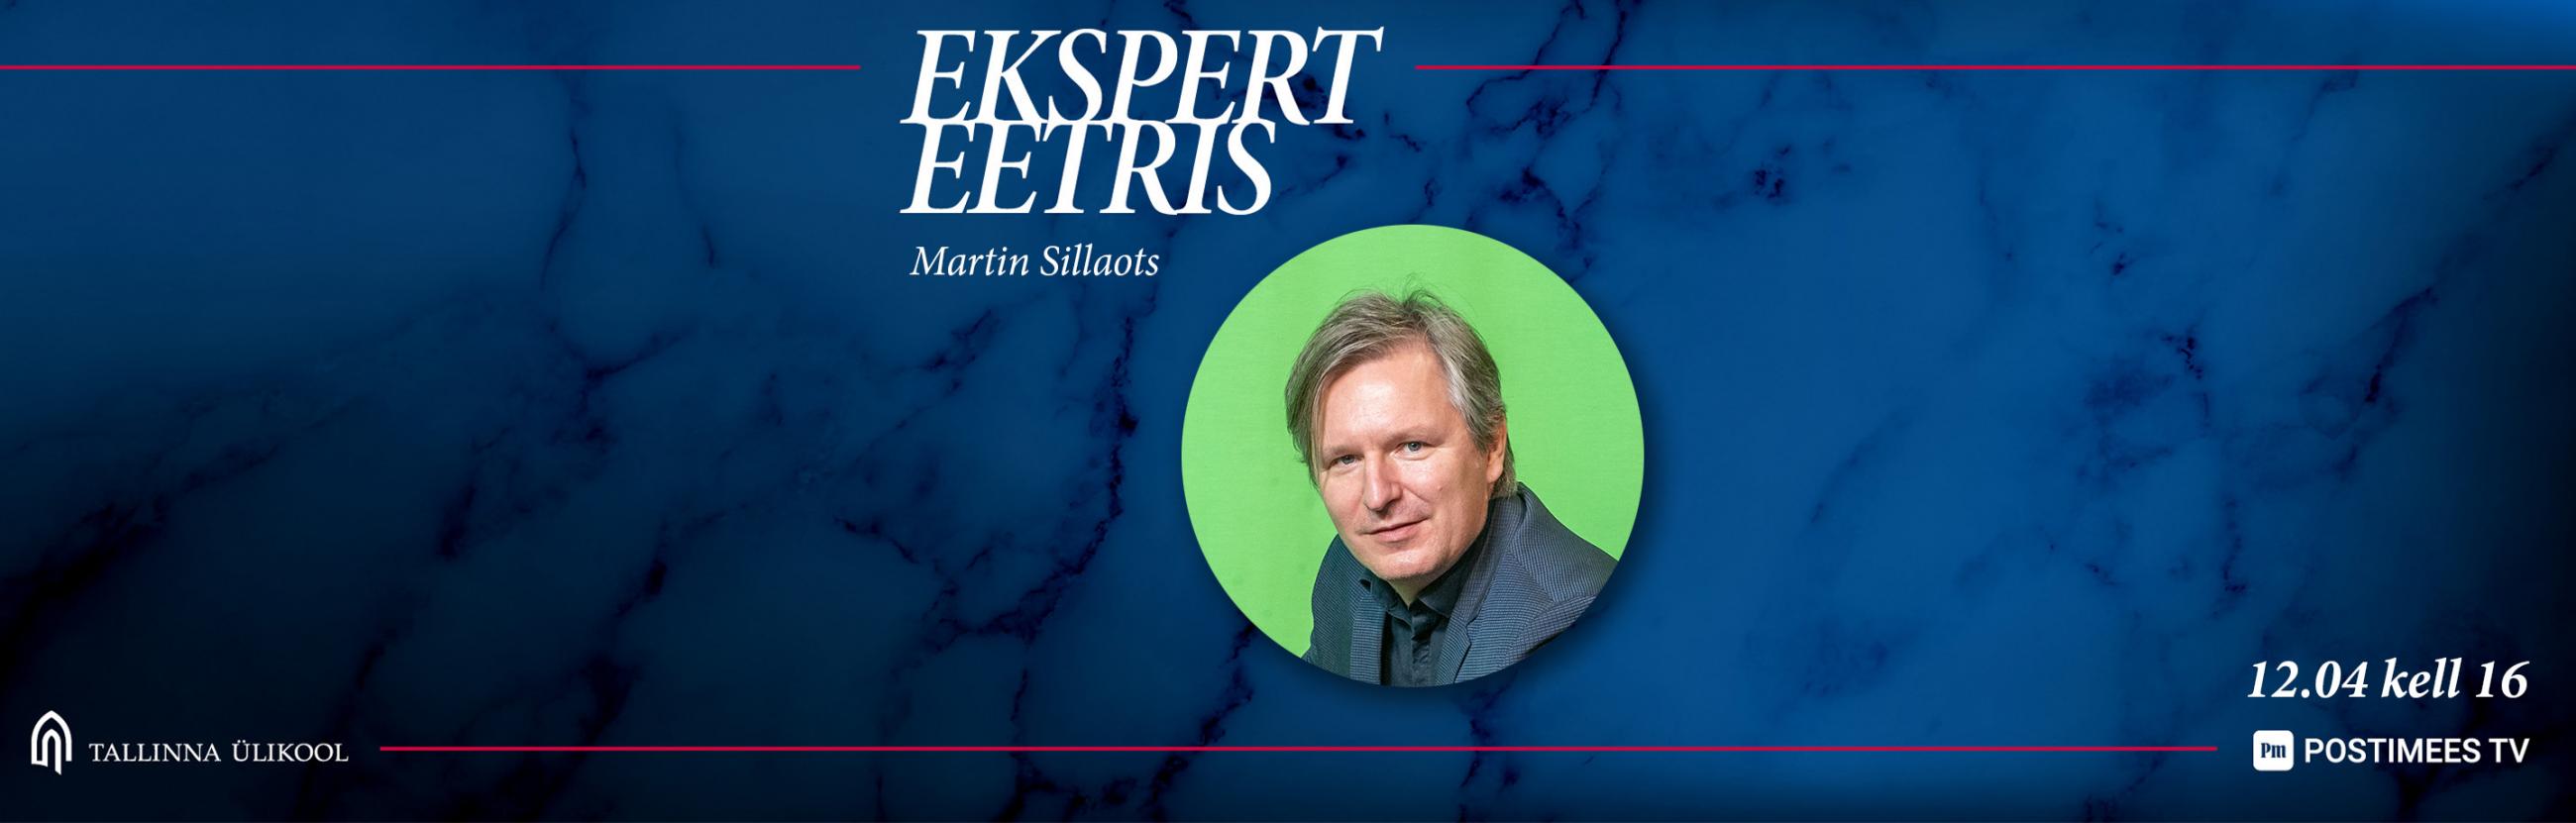 Martin Sillaots